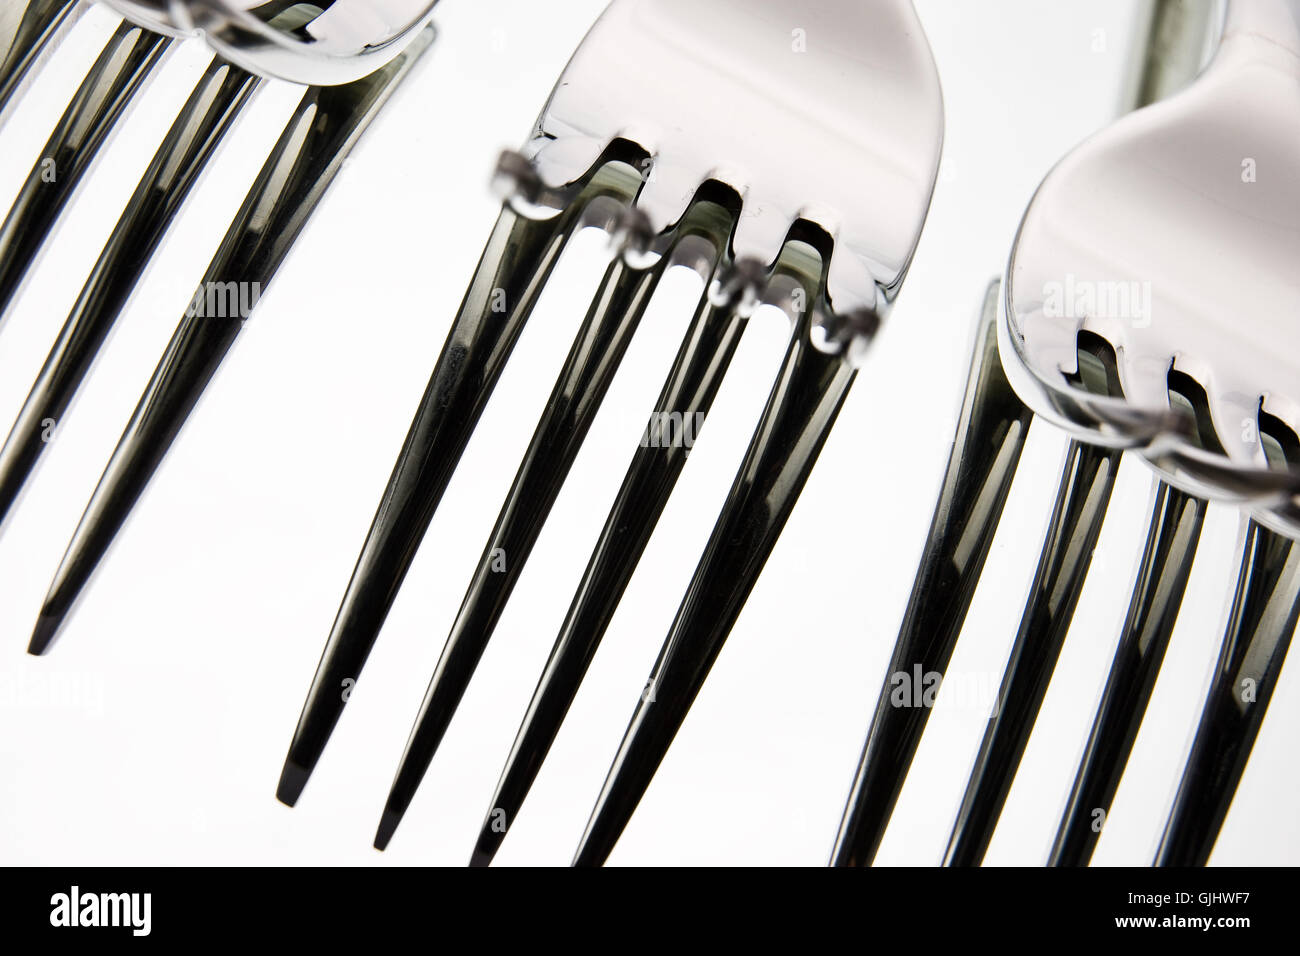 fork forks flatware Stock Photo